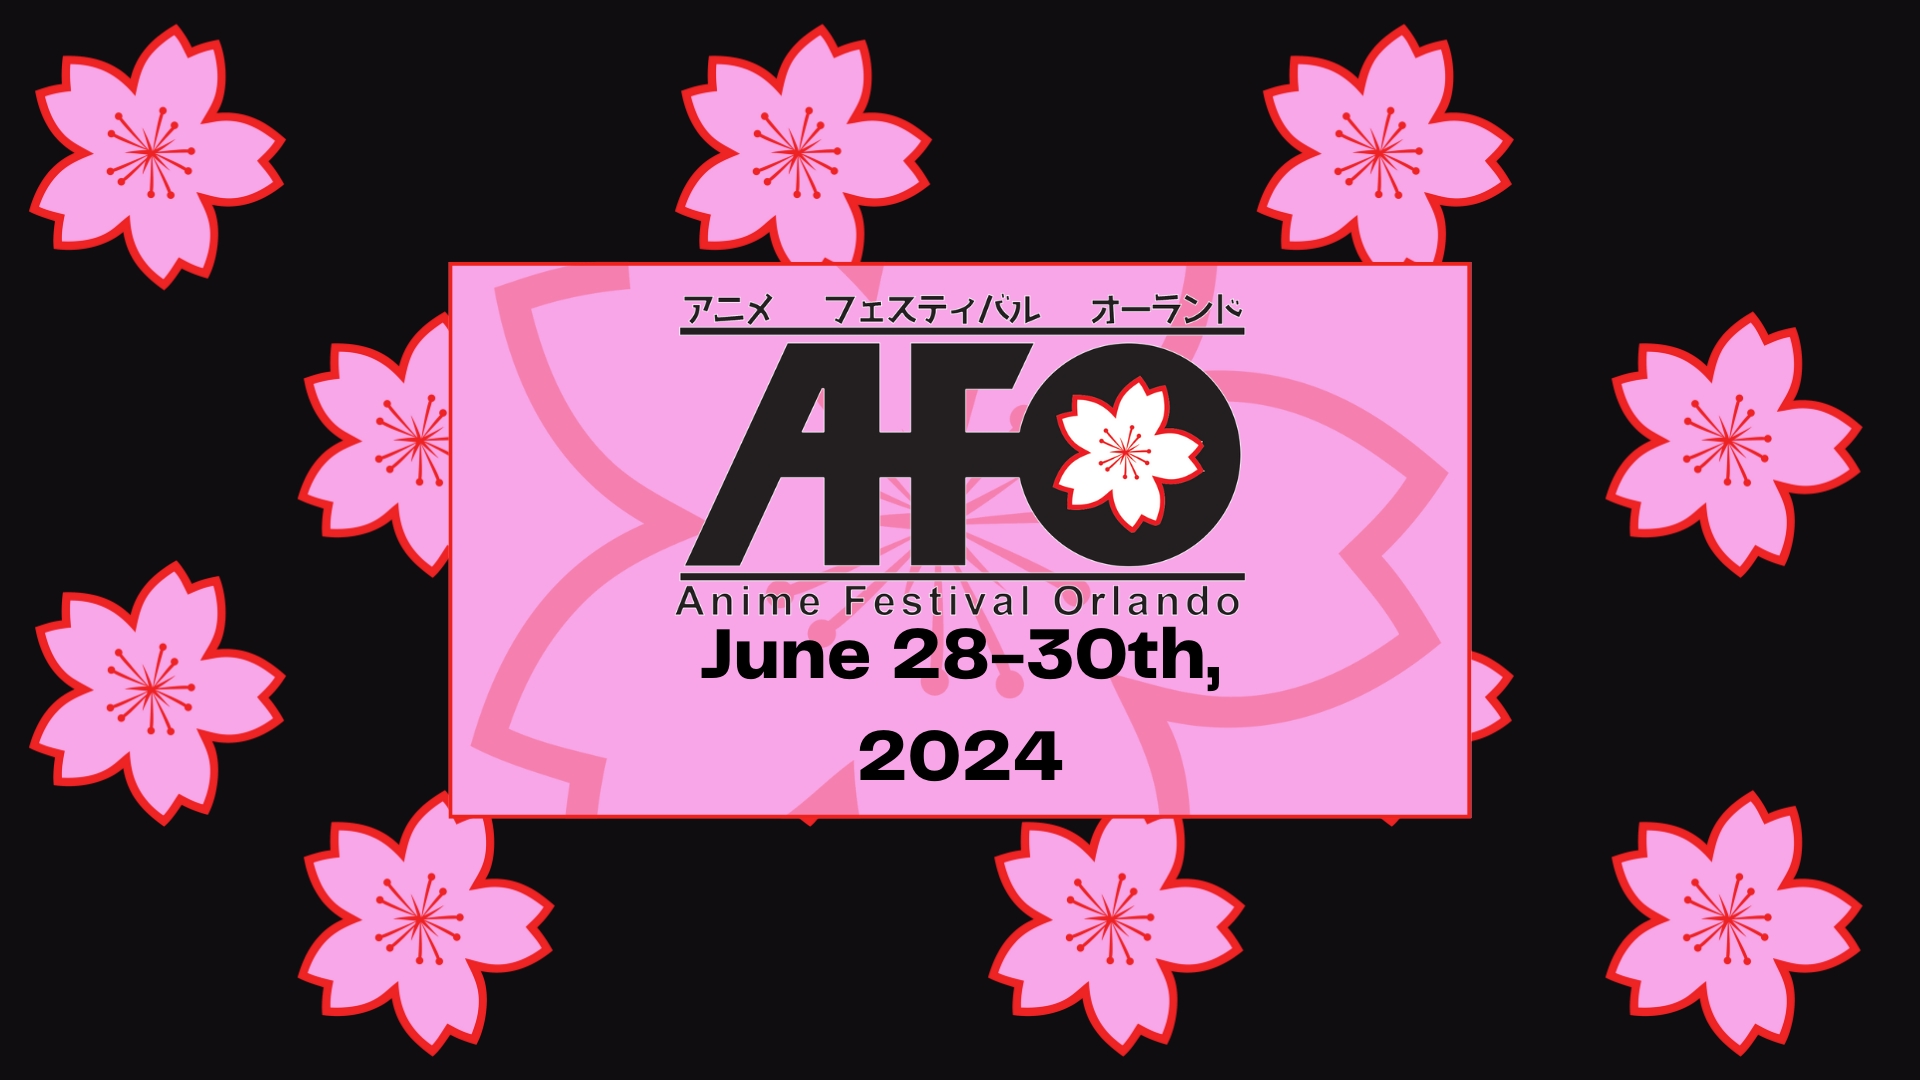 Anime Festival Orlando 2024